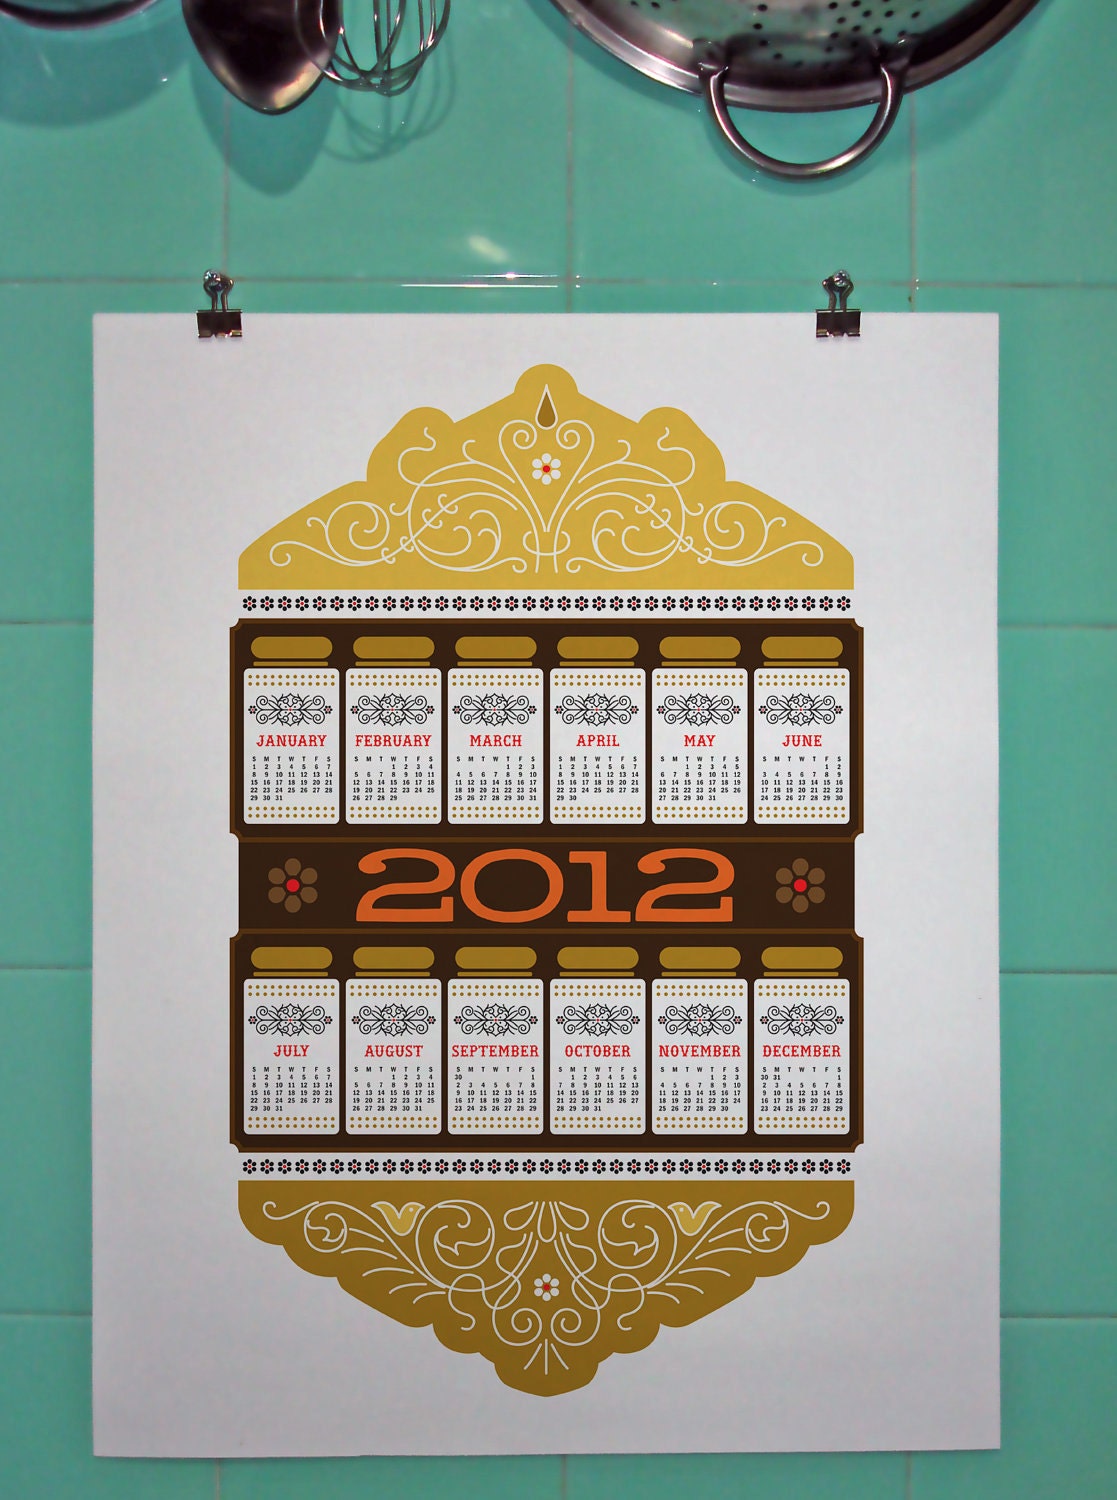 2012 Calendar Granny Chic Kitchen retro art giclee print